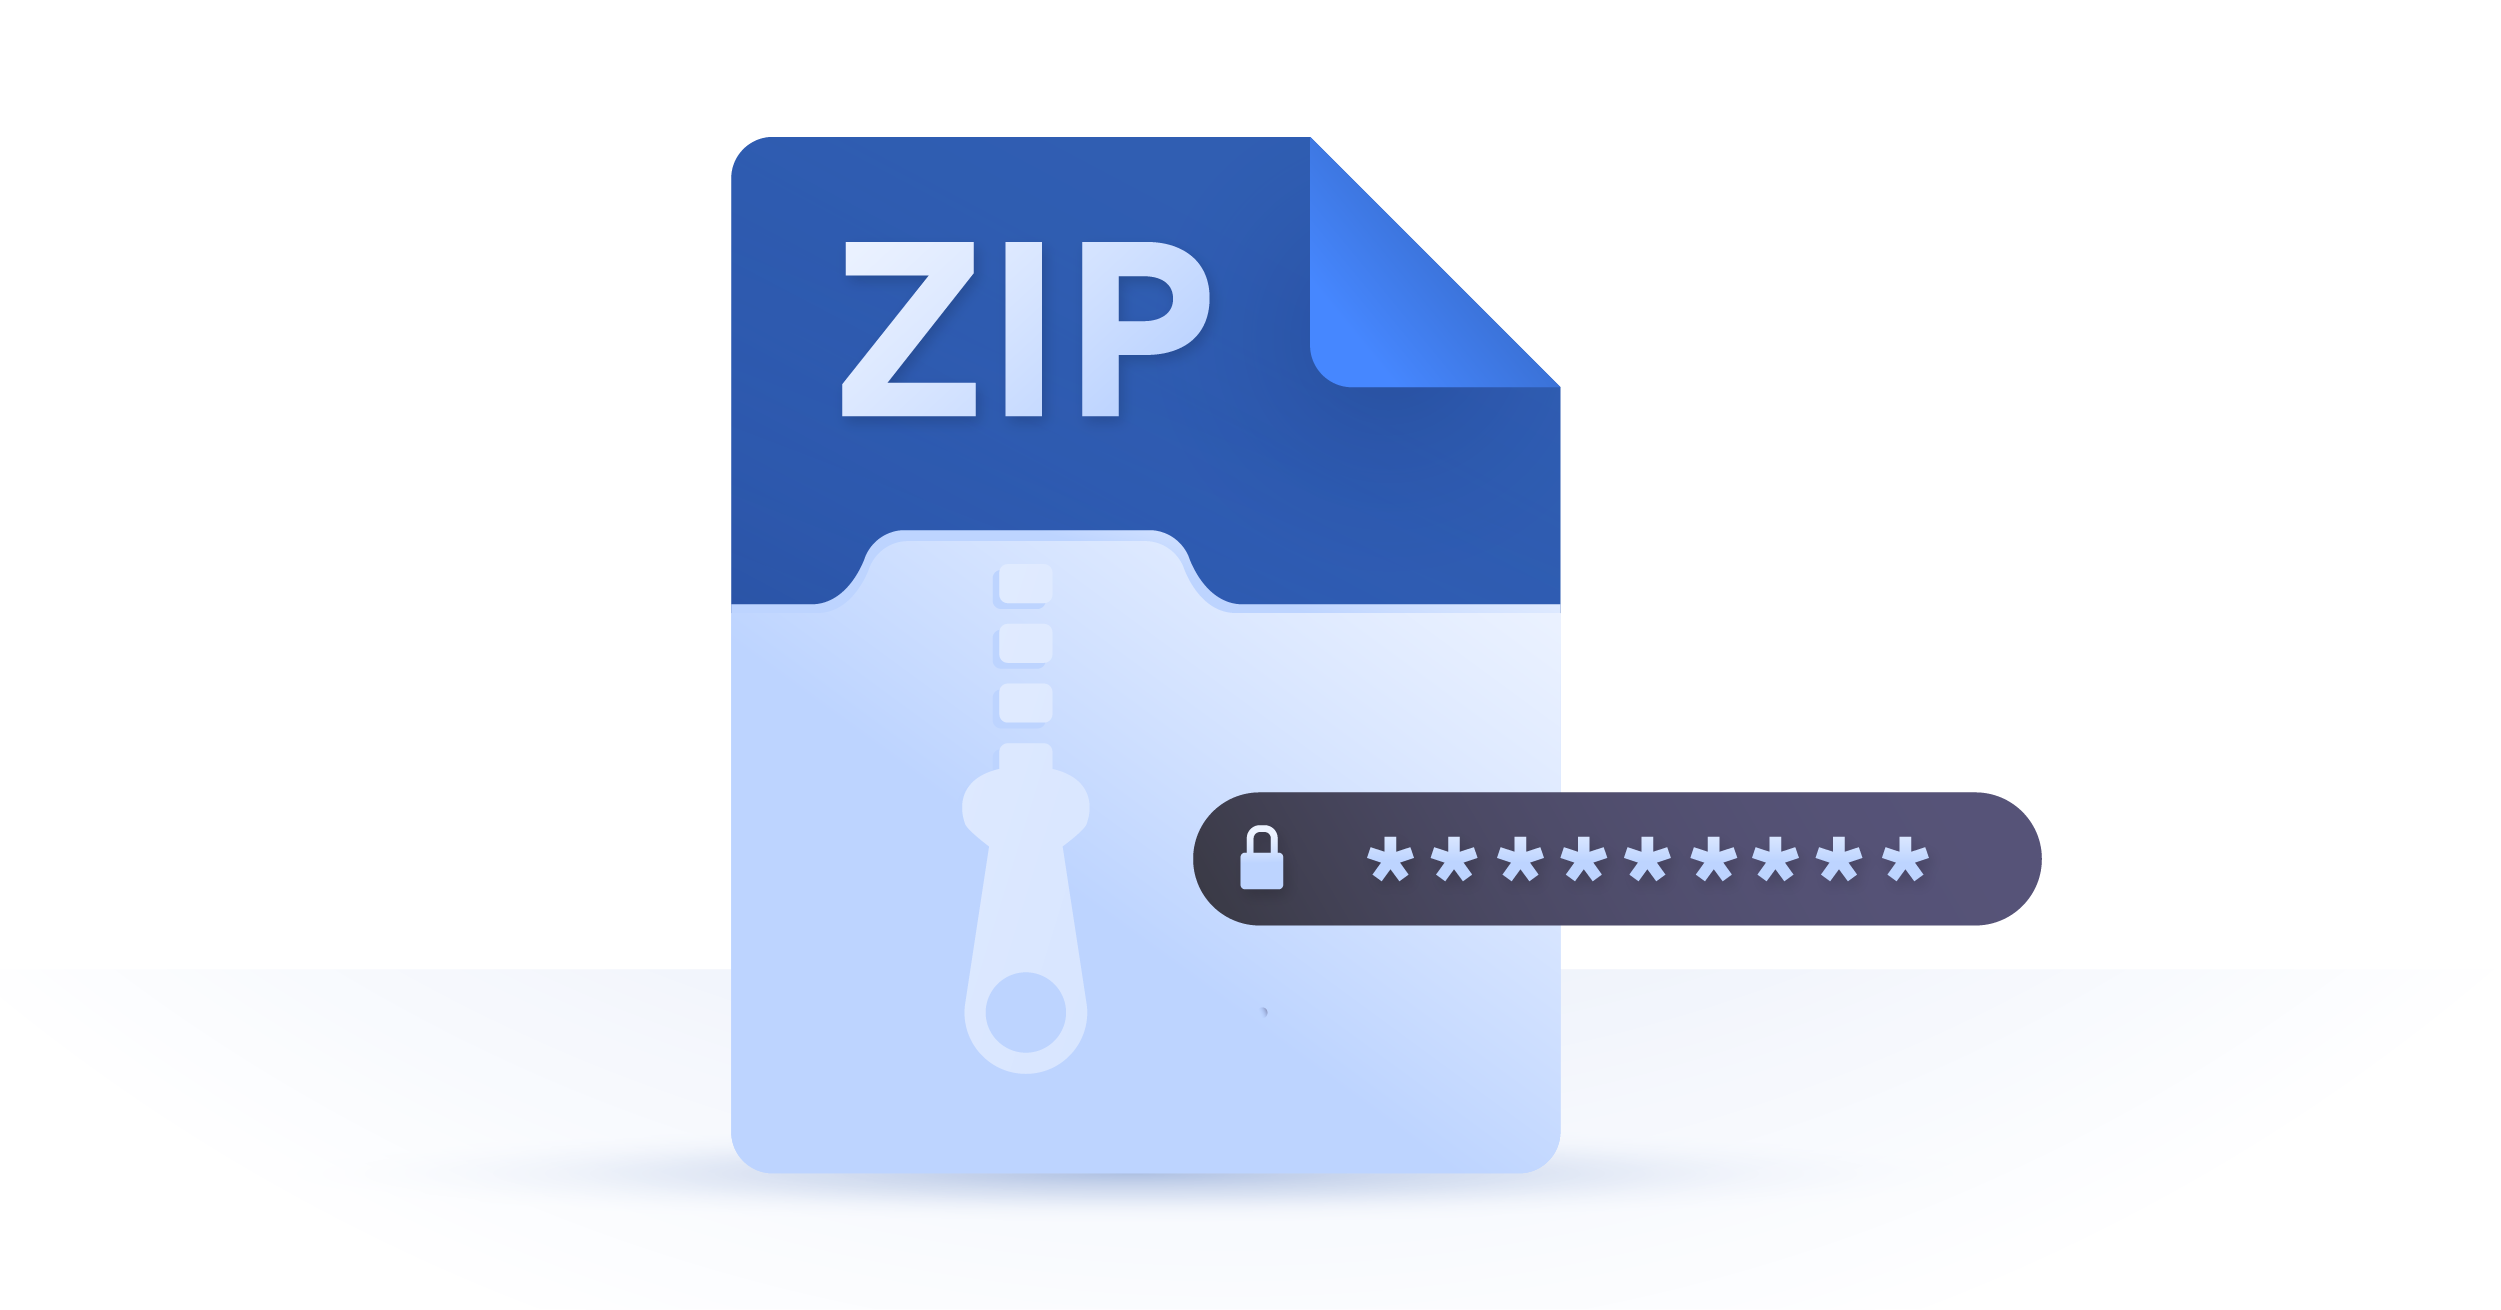 zip folder with password